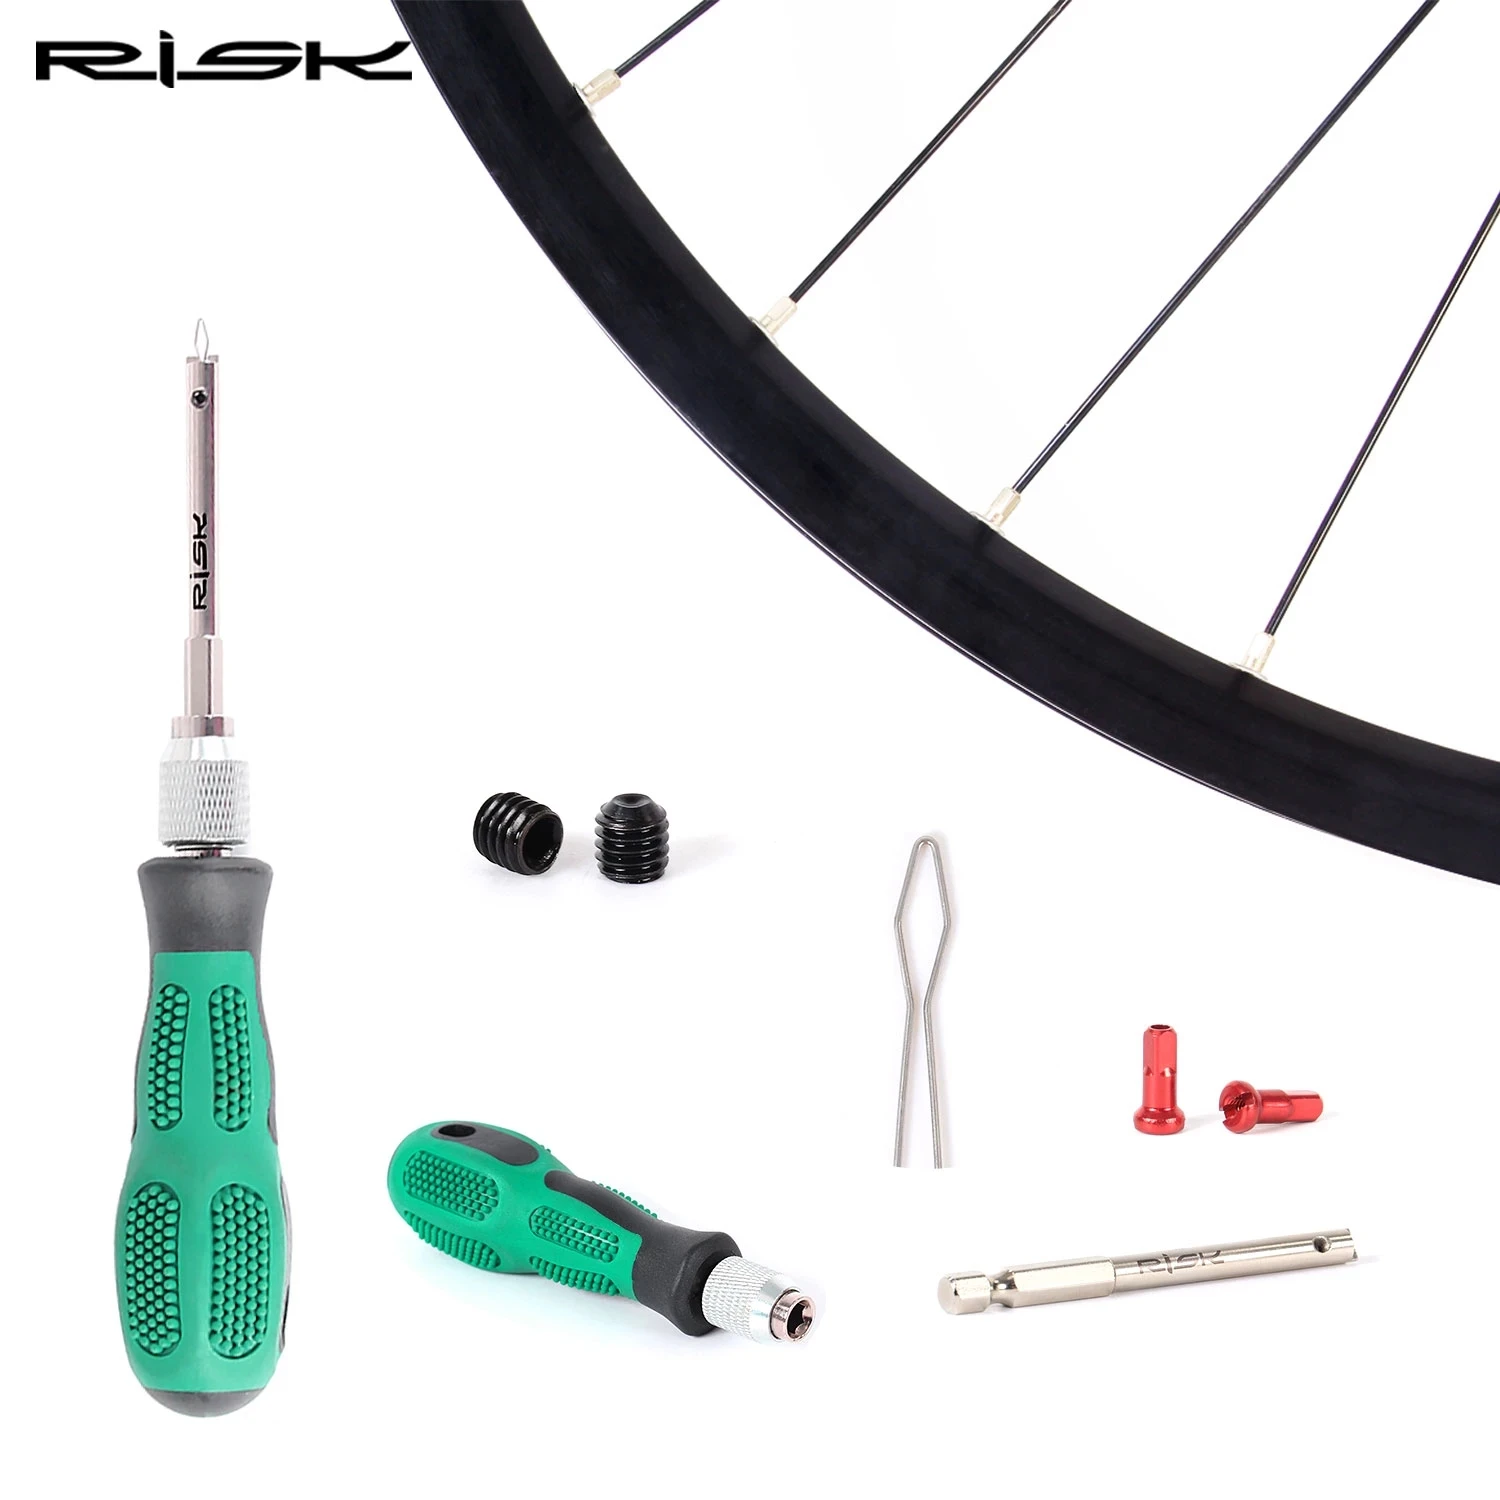 

Инструмент для установки сосков на спицах велосипеда, отвертка для снятия колпачков на спицах велосипеда, ключ для снятия колпачков на спицах горных и дорожных велосипедов